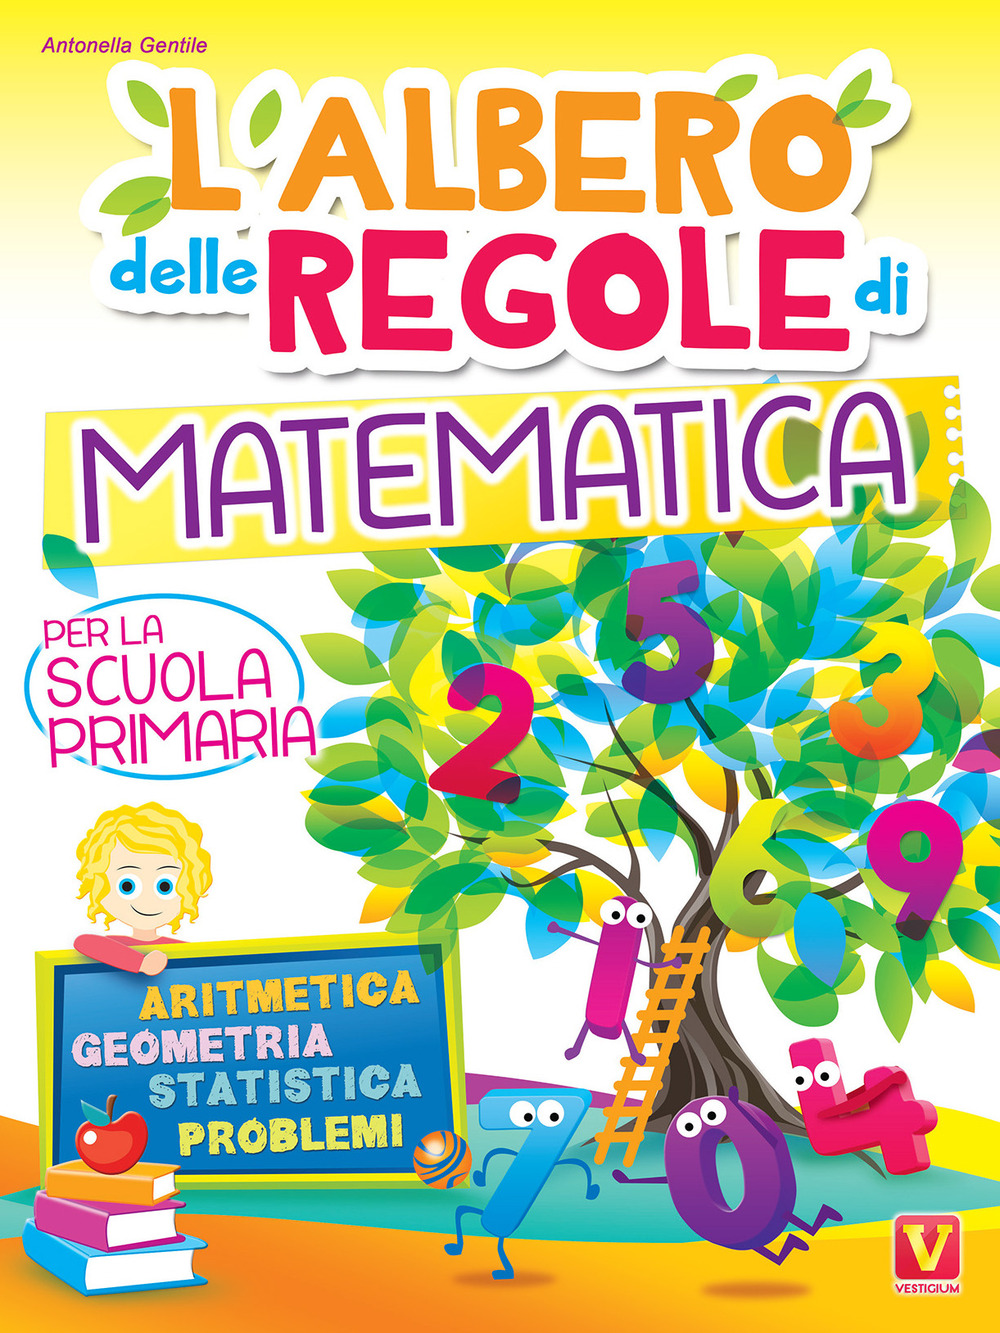 Image of L' albero delle regole di matematica. Per la scuola primaria. Aritmetica, geometria, statistica, problemi. Ediz. illustrata